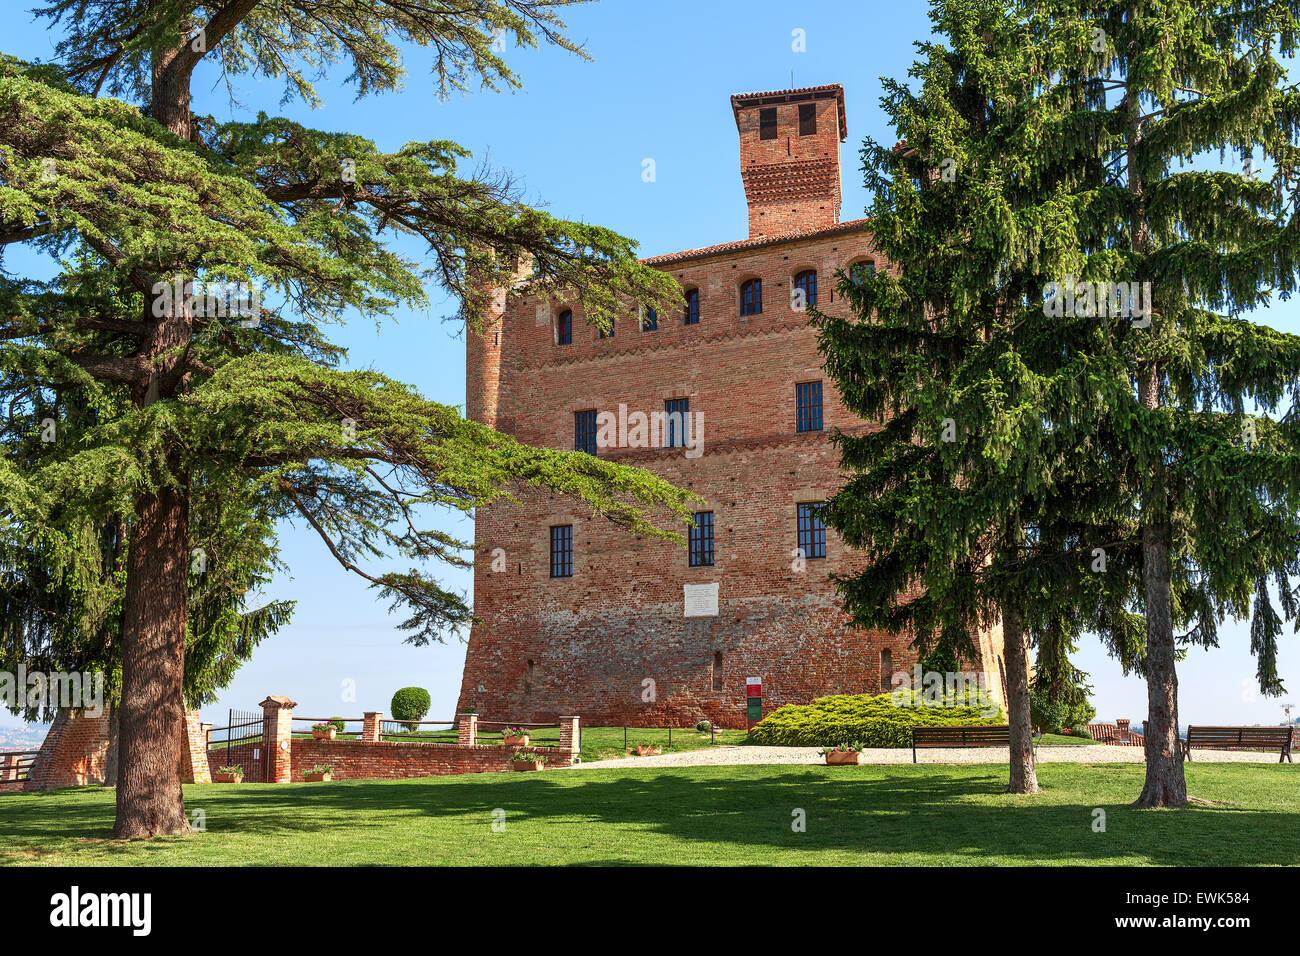 Piccolo prato verde, alberi e castello medievale in Piemonte, Italia settentrionale. Foto Stock